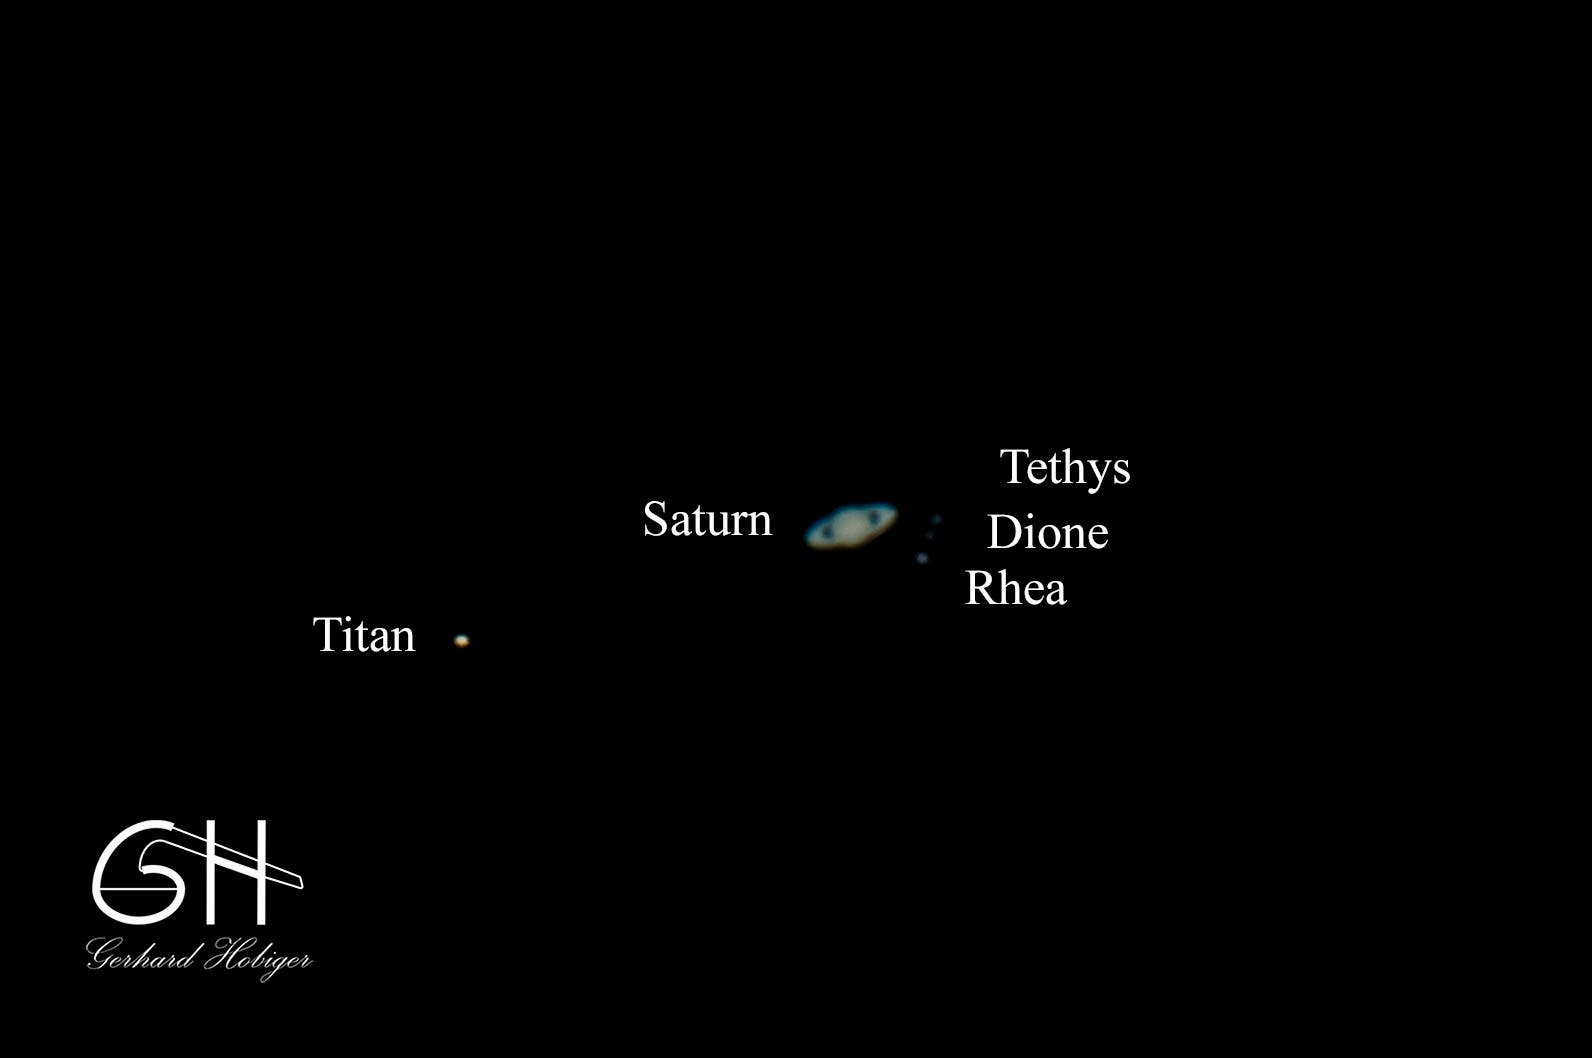 Saturn und vier seiner Monde